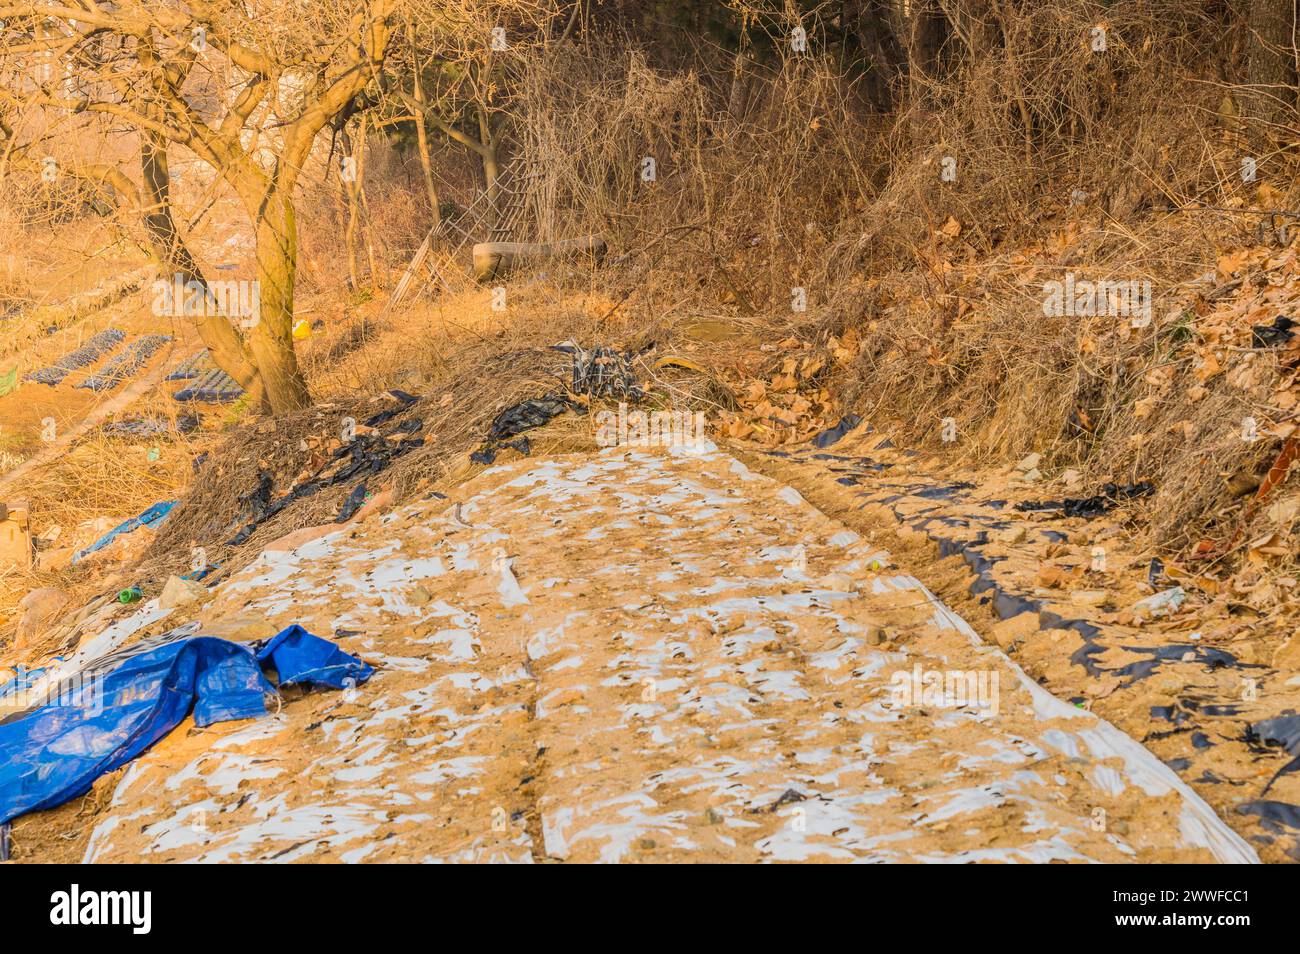 Un sentier rural négligé jonché de feuilles et de plastique bleu, en Corée du Sud Banque D'Images